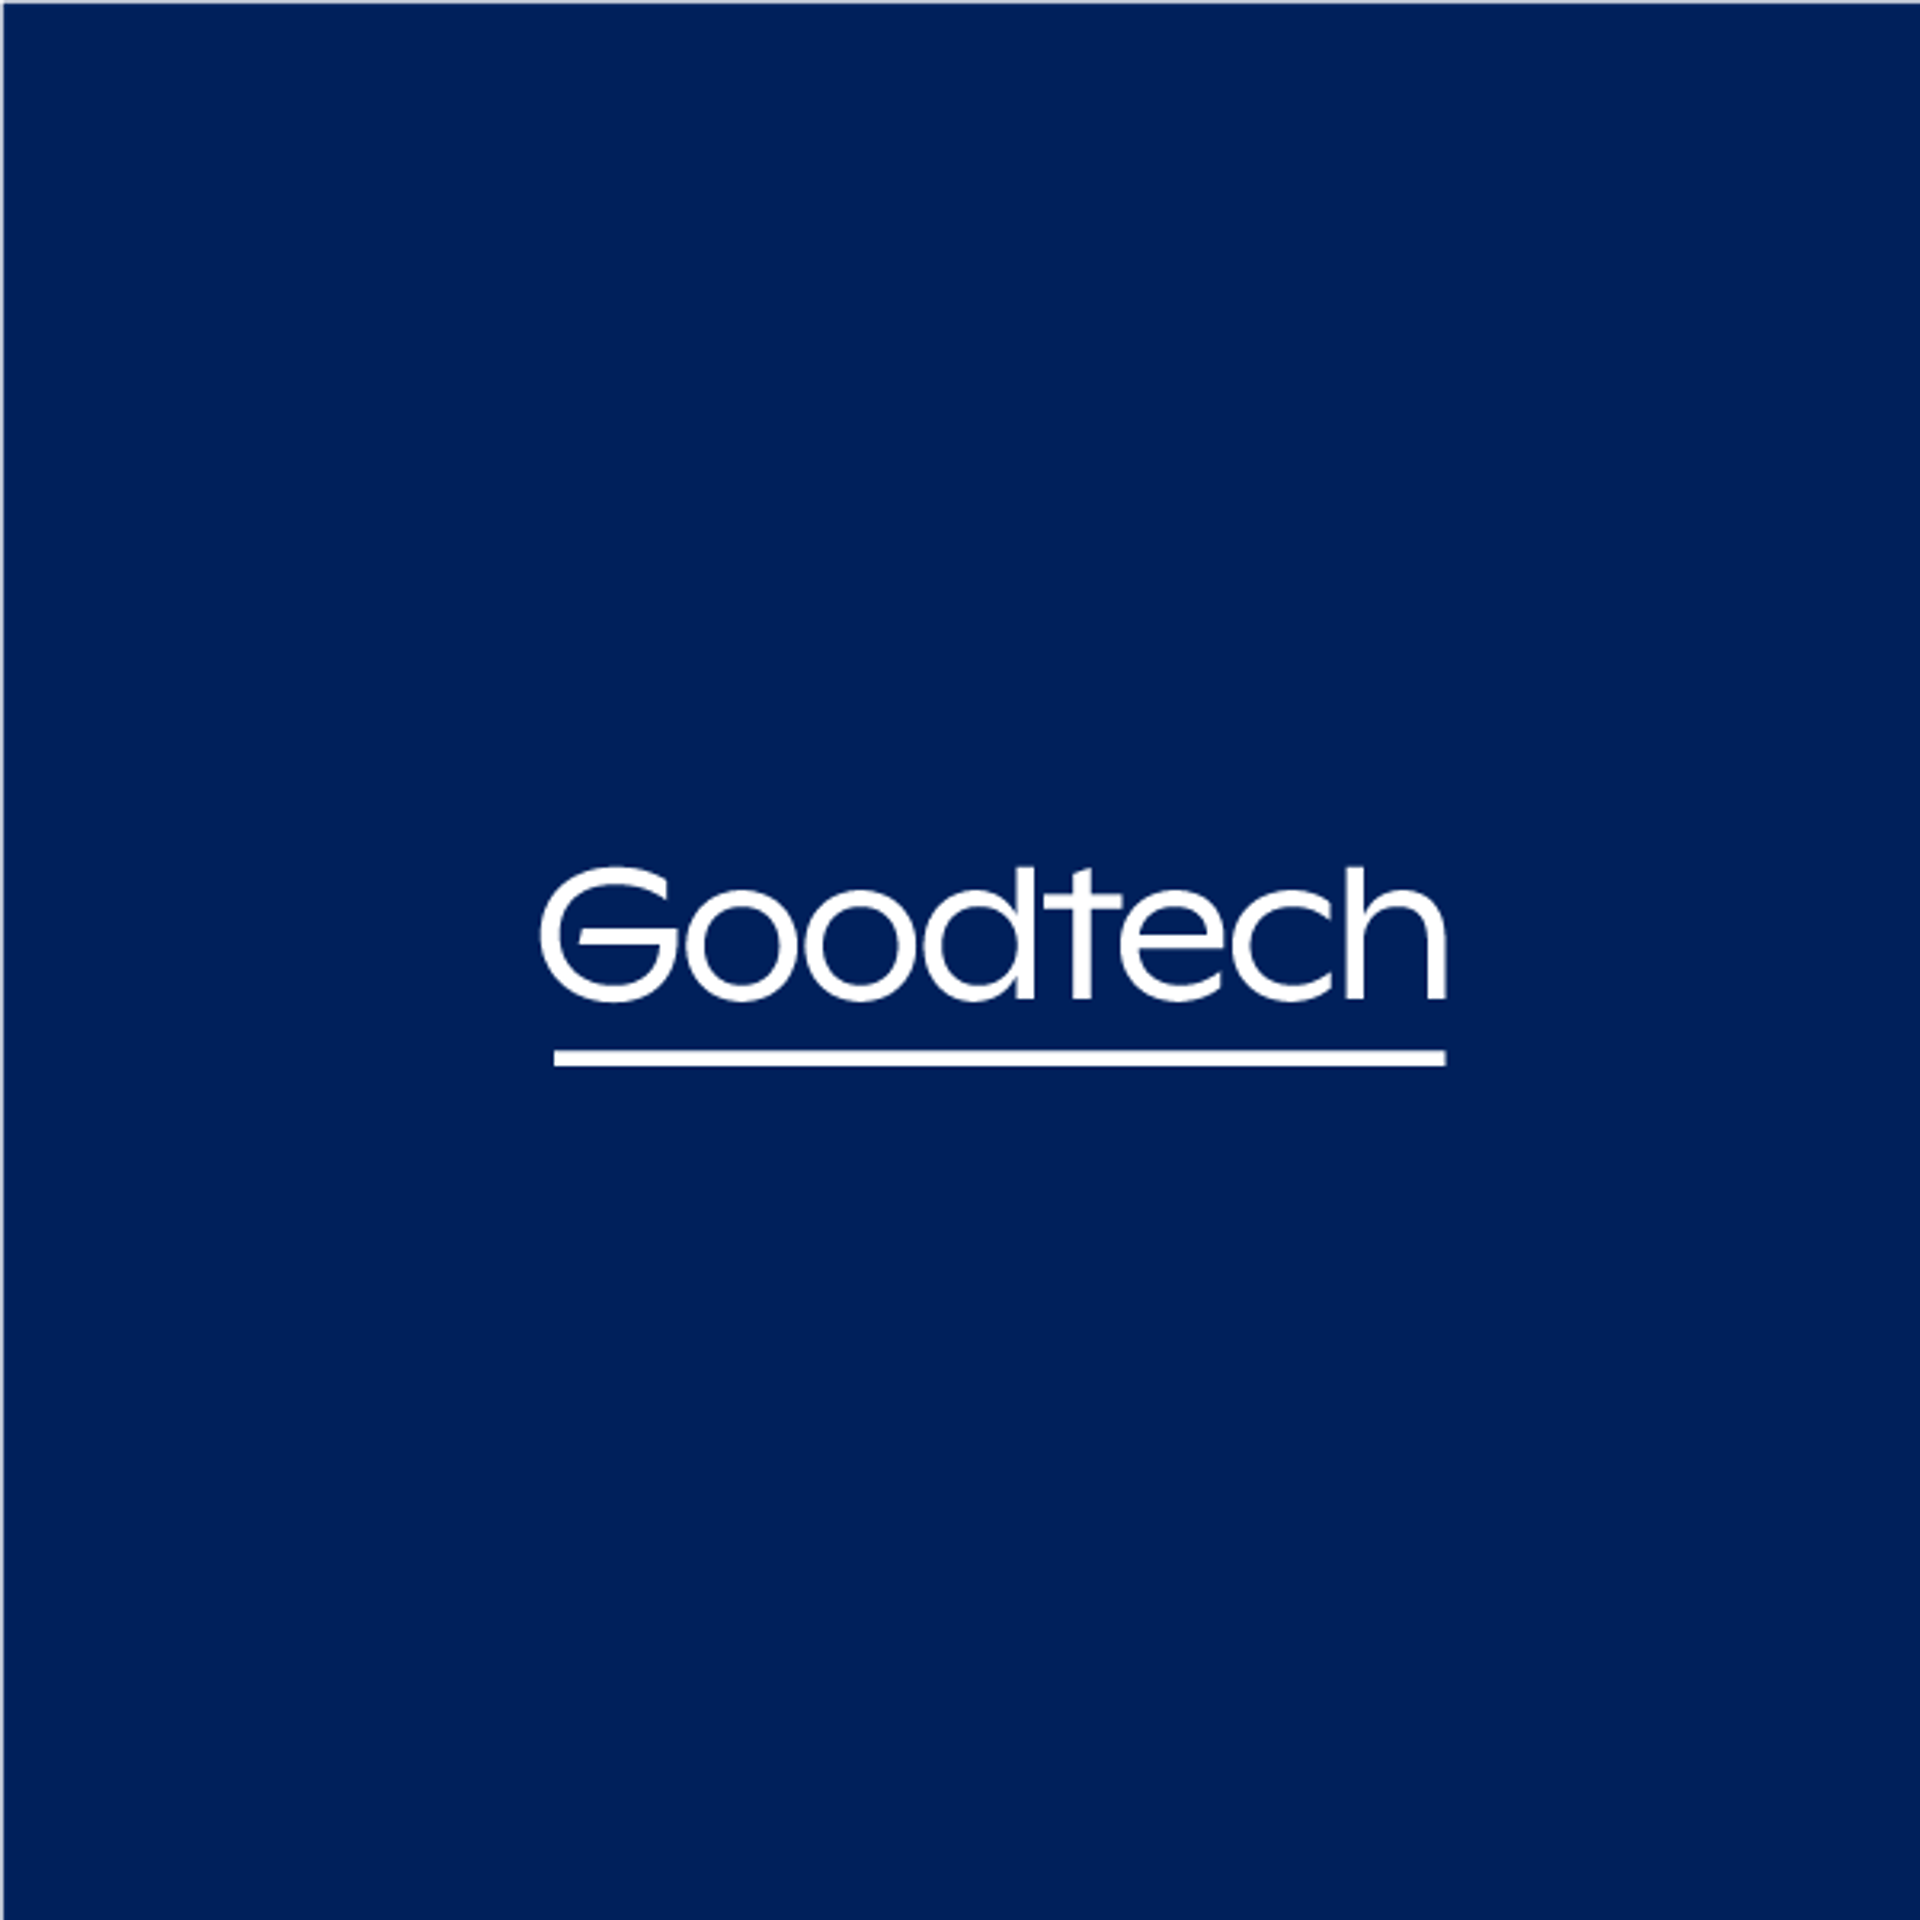 Goodtech logo